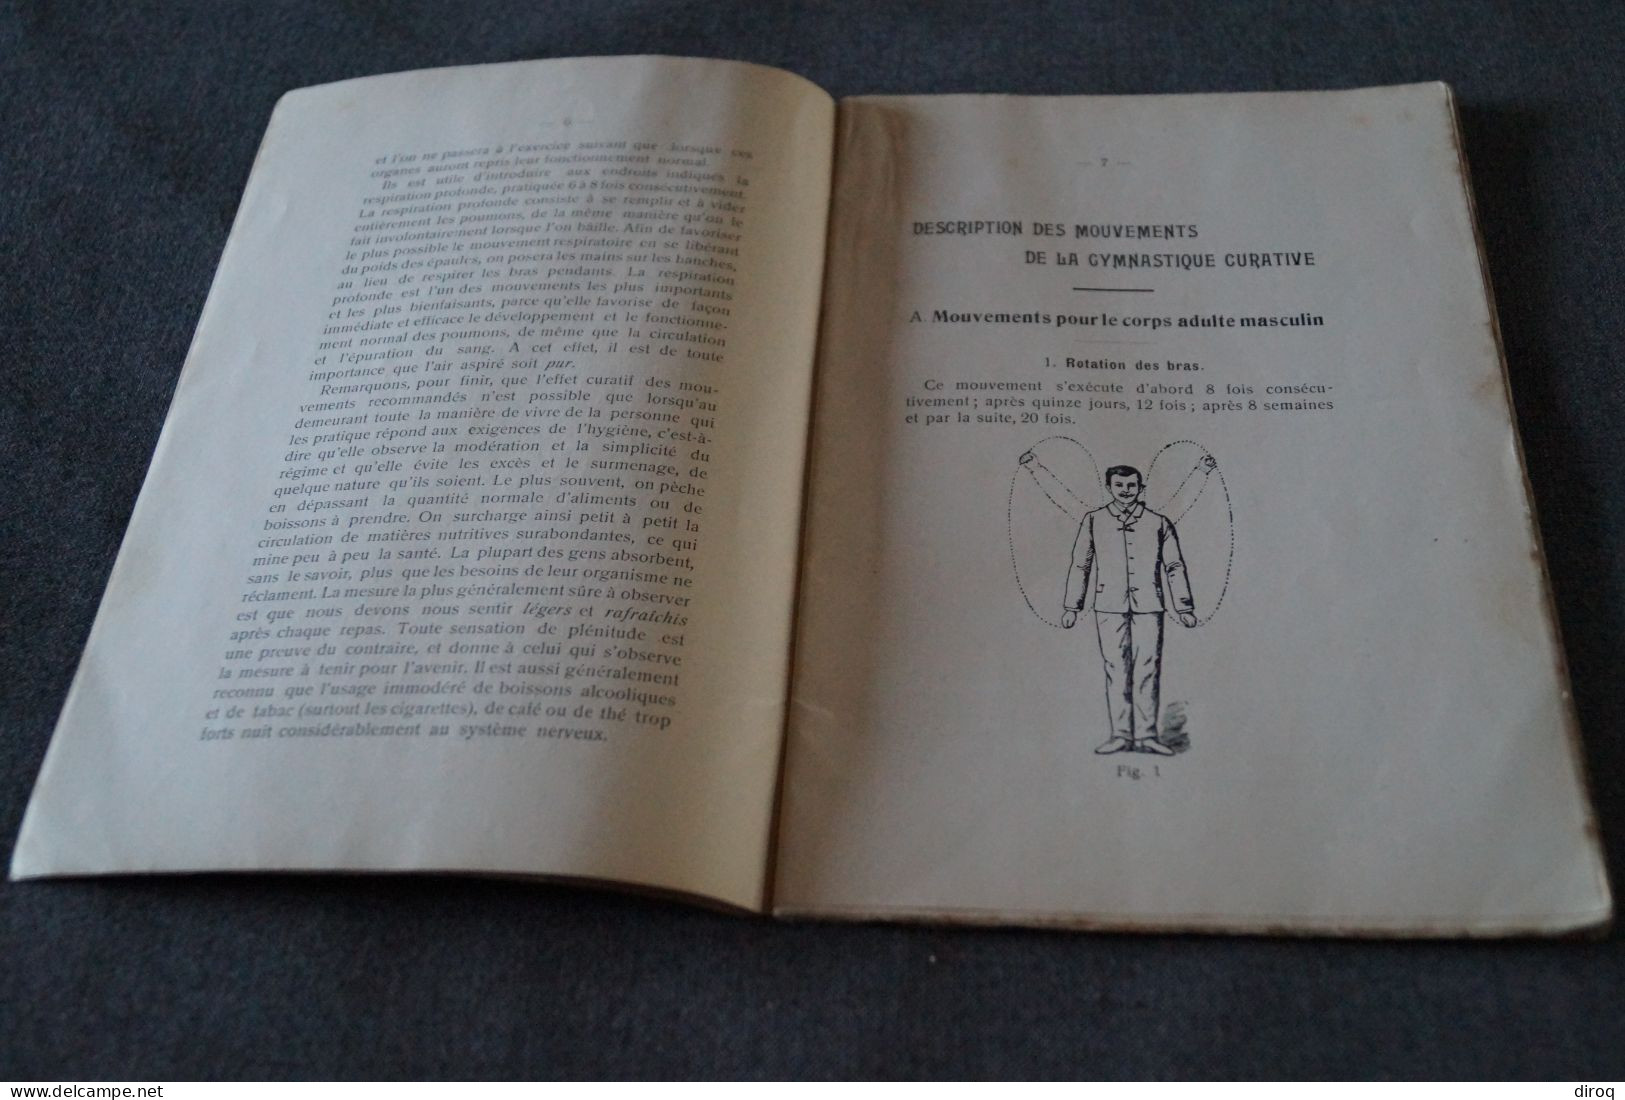 RARE,Gymnastique Curative De La Nervosité,complet 48 Pages,ancien,22 Cm. Sur 14,5 Cm. - Gymnastics